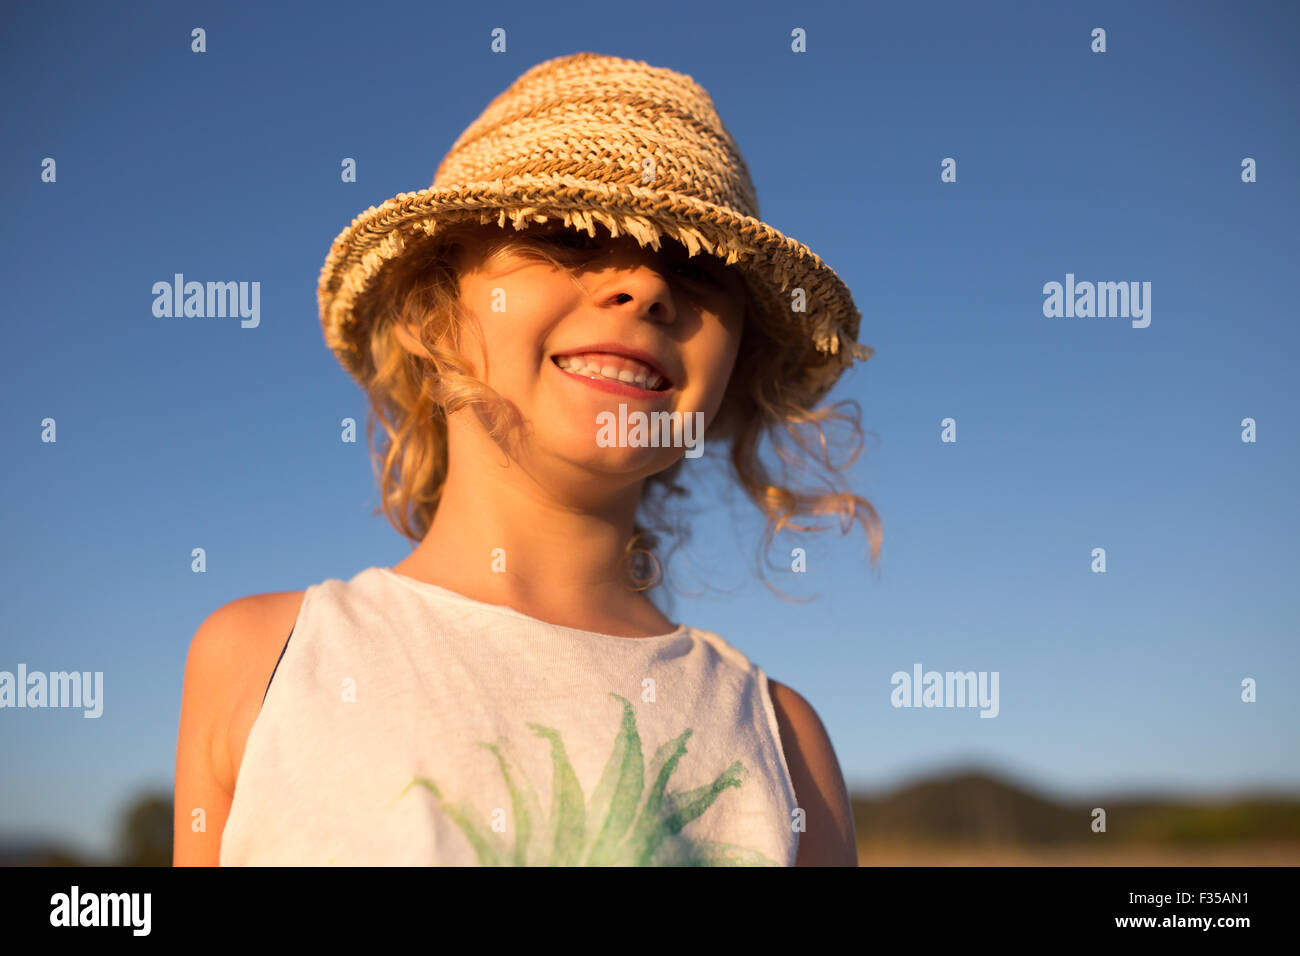 Carino bambina emotiva ritratto all'aperto nella calda luce del tramonto Foto Stock